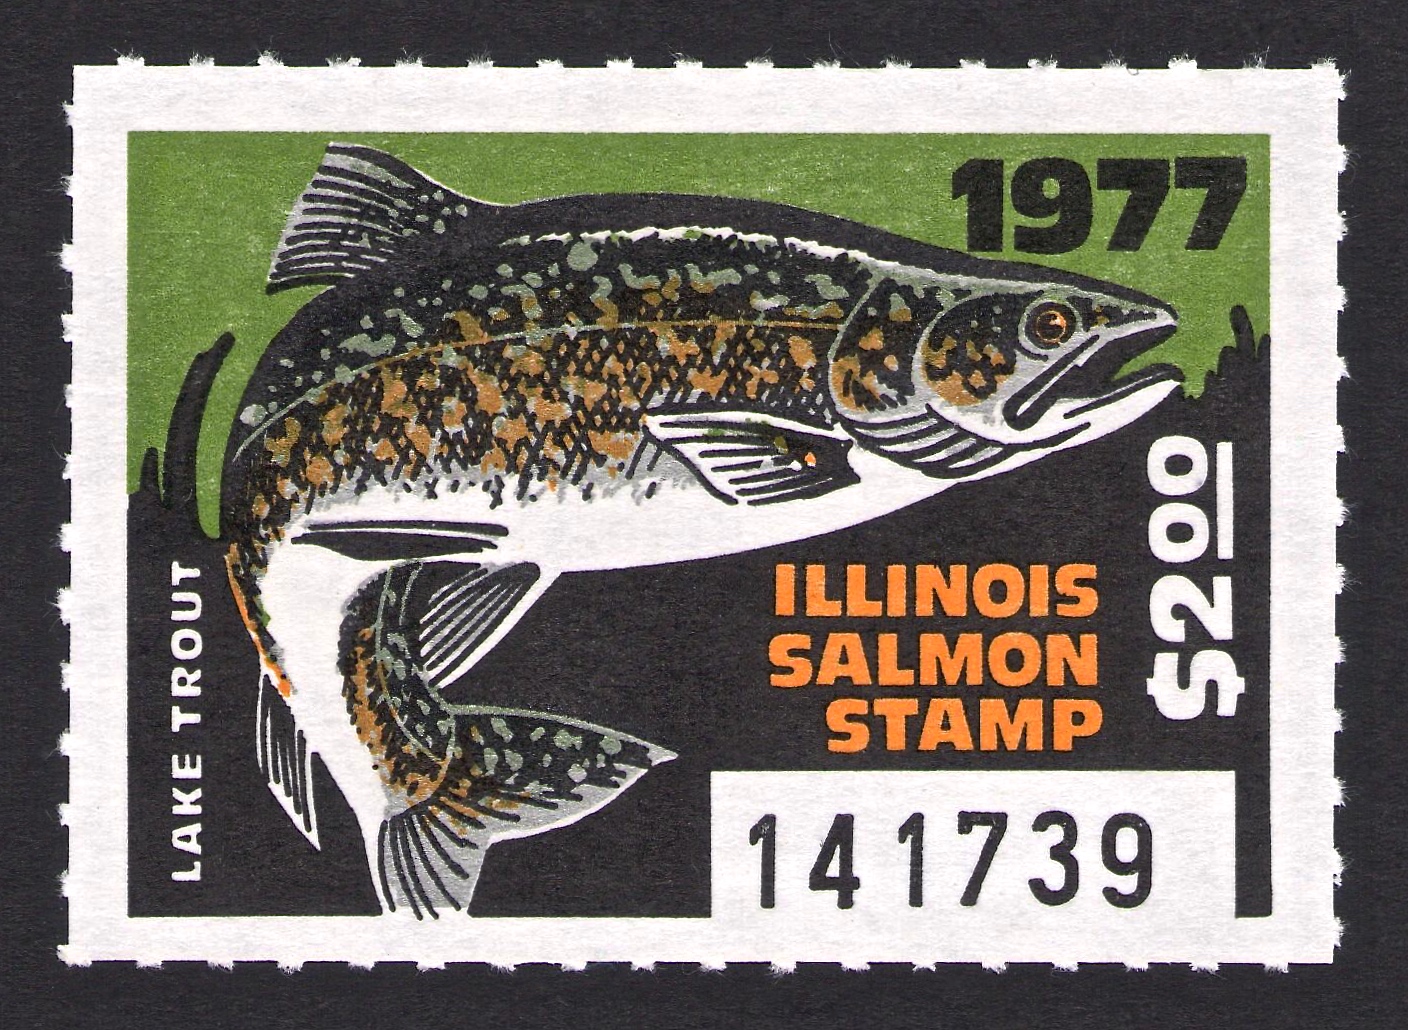 1977 Illinois Salmon